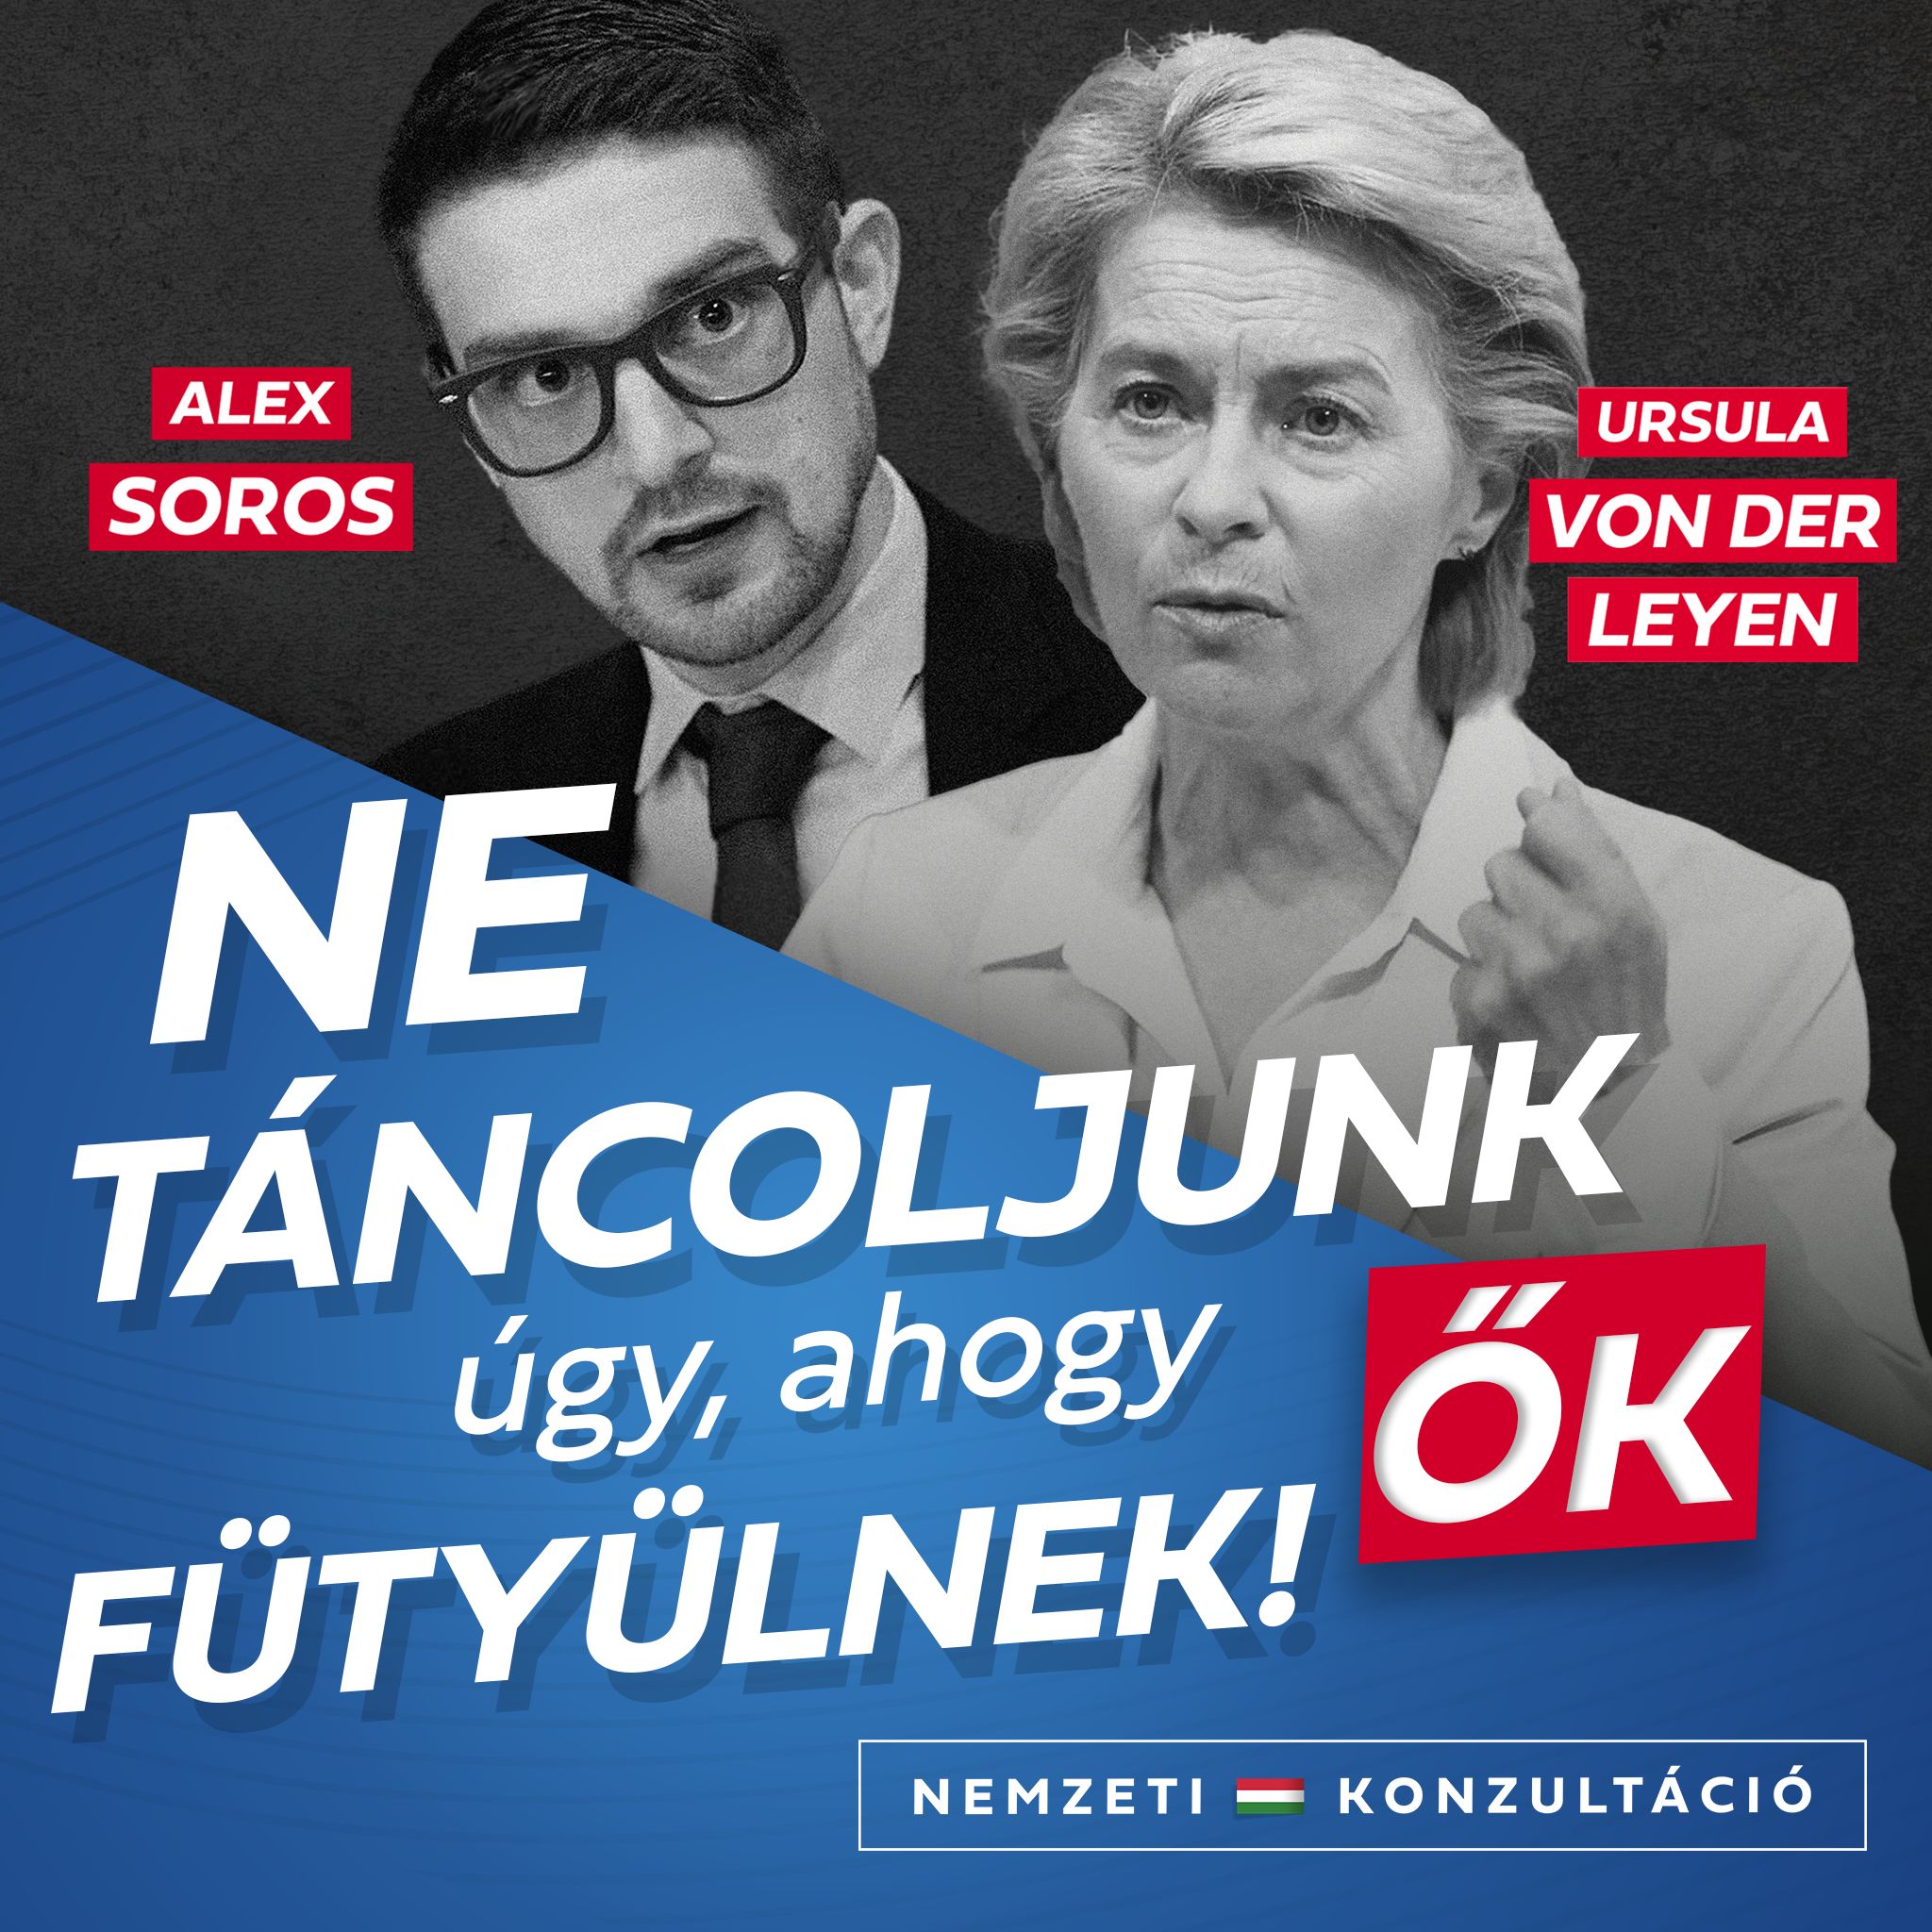 Von der Leyen a legfőbb támogatója az uniós források felszabadításának Magyarország számára